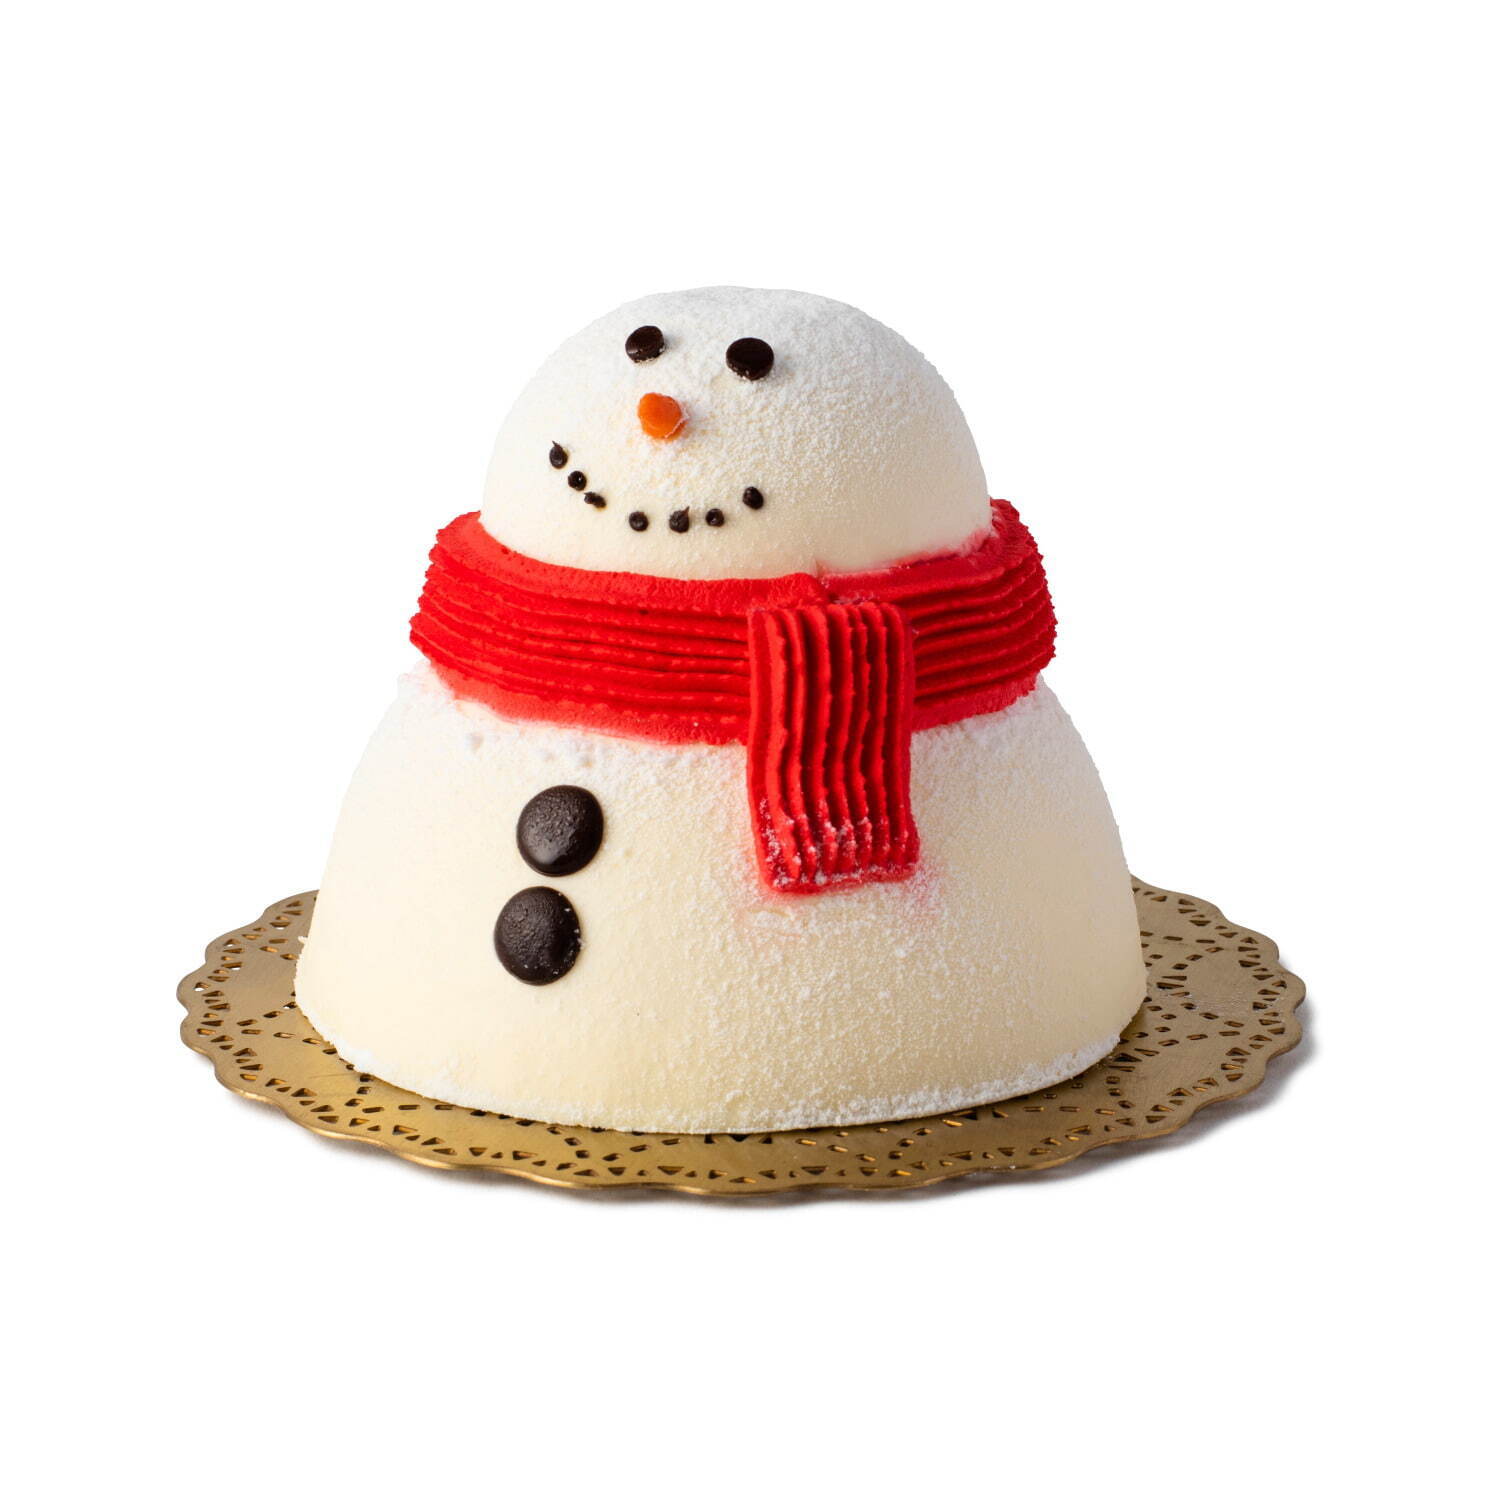 ルミネ ニュウマンのクリスマスケーキ21年 雪だるま型ケーキやエシレバター使用タルトなど ファッションプレス